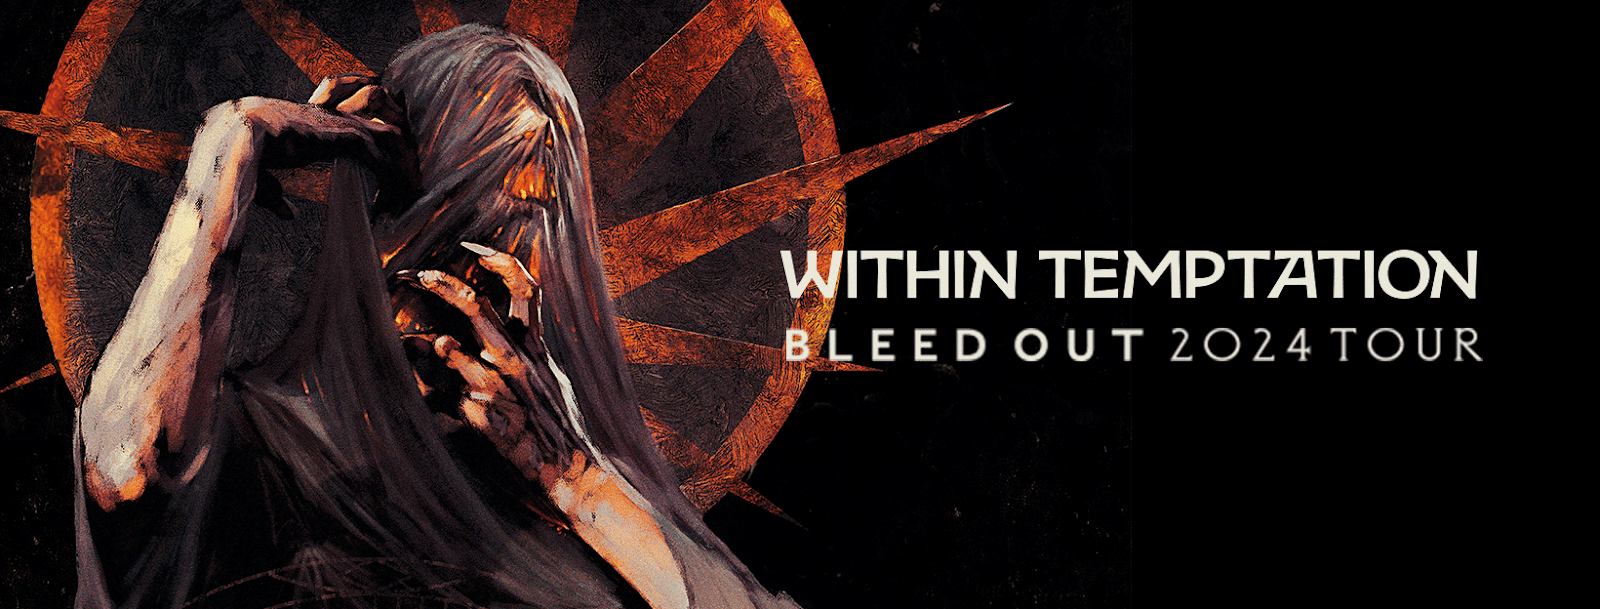 Within Temptation doará todos os royalties do novo single para a Music Saves UA, na Ucrânia, enquanto durar a guerra.